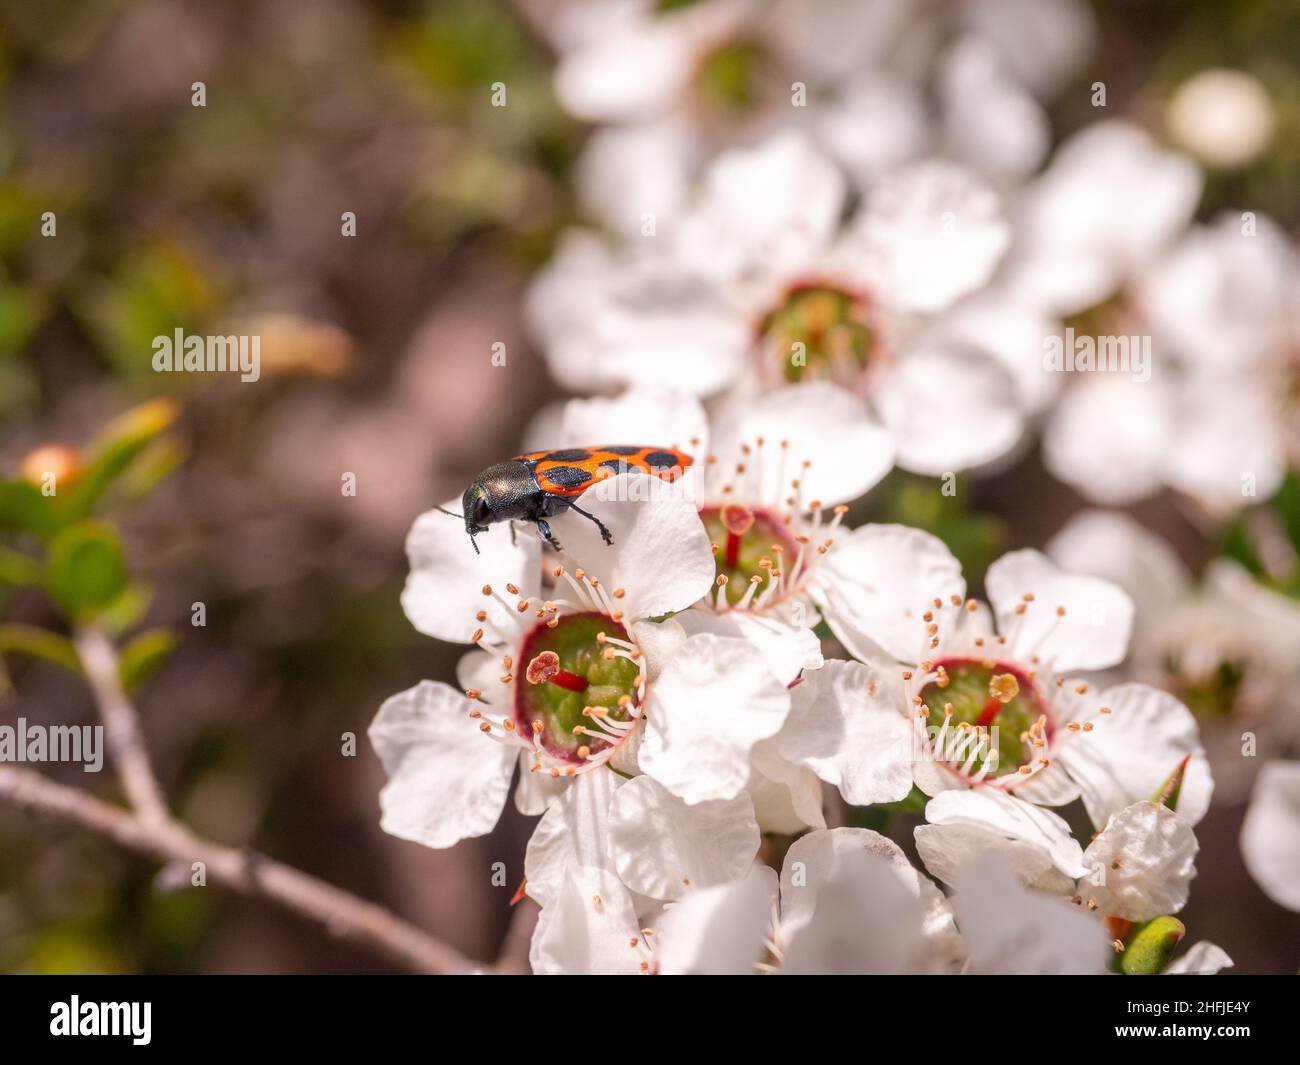 Australian jewel beetle on tea tree flowers Stock Photo